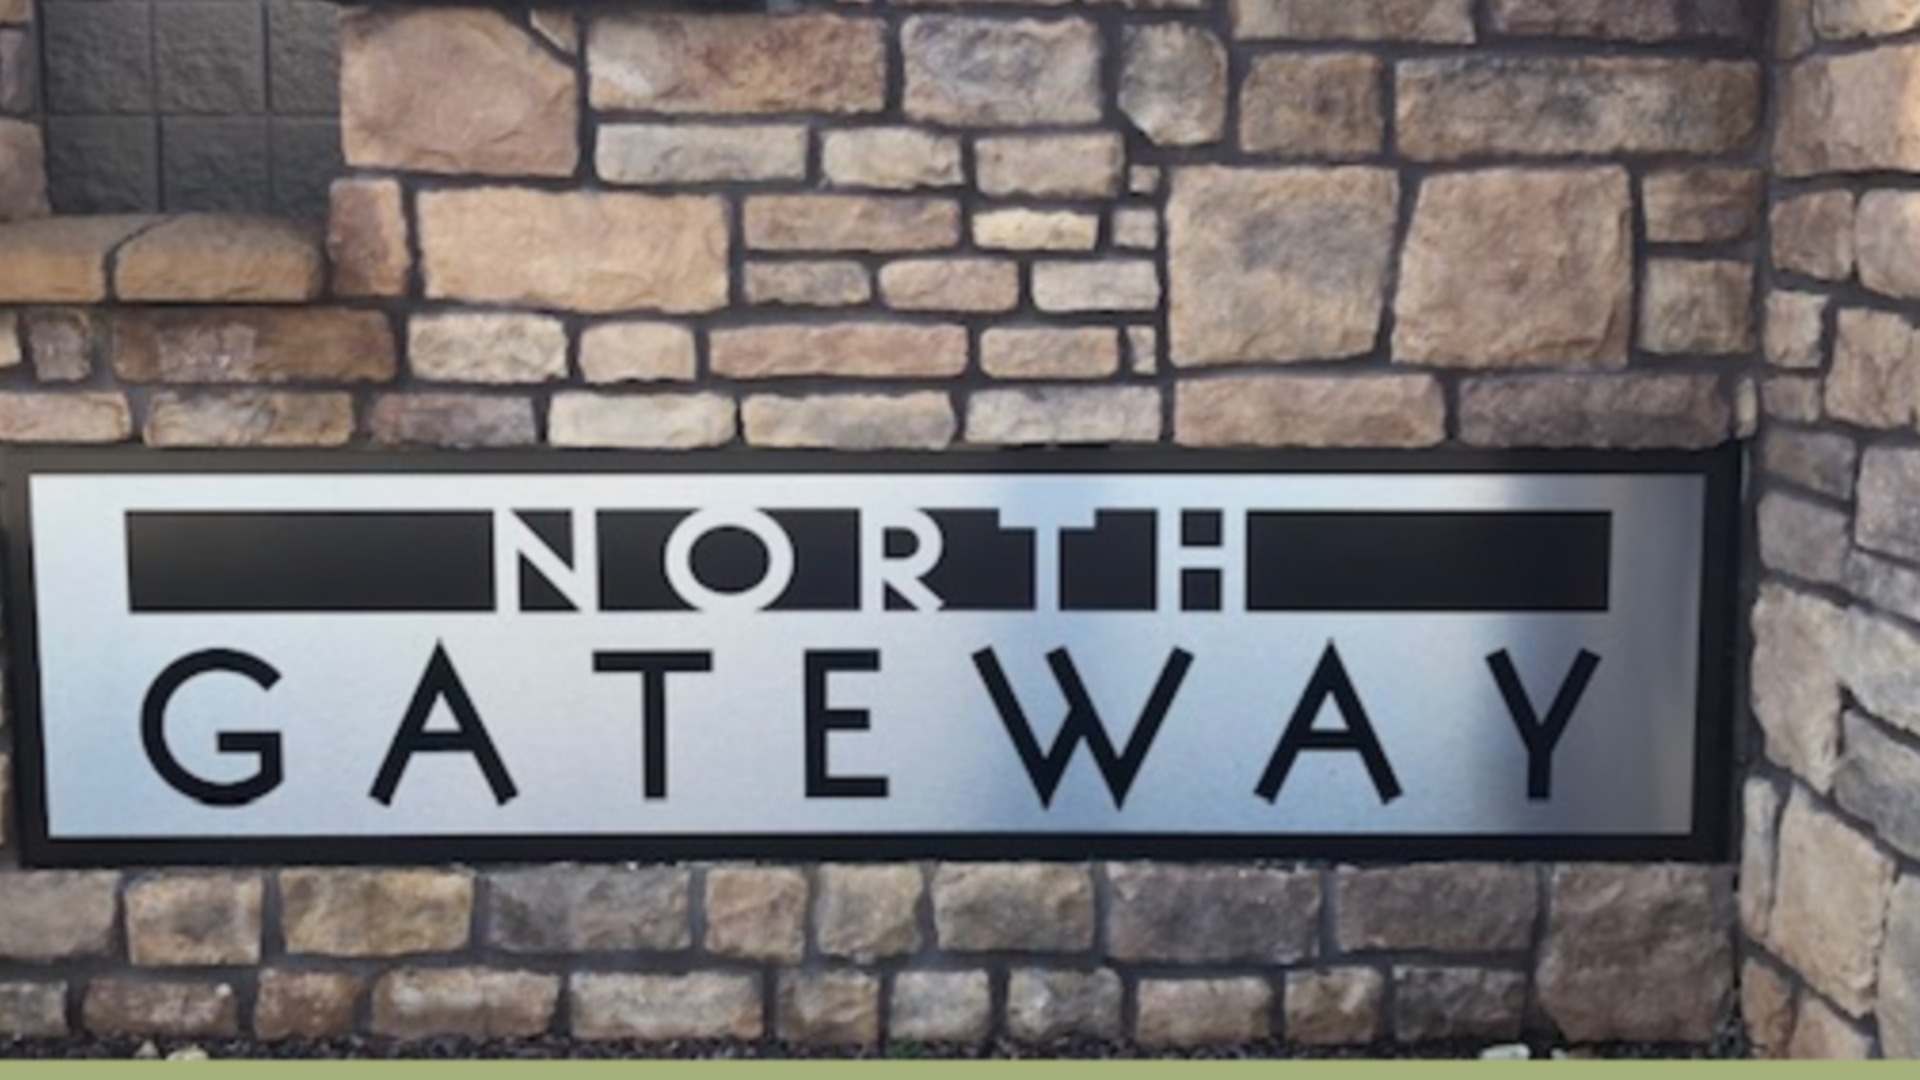 North Gateway homes in norterra 85085